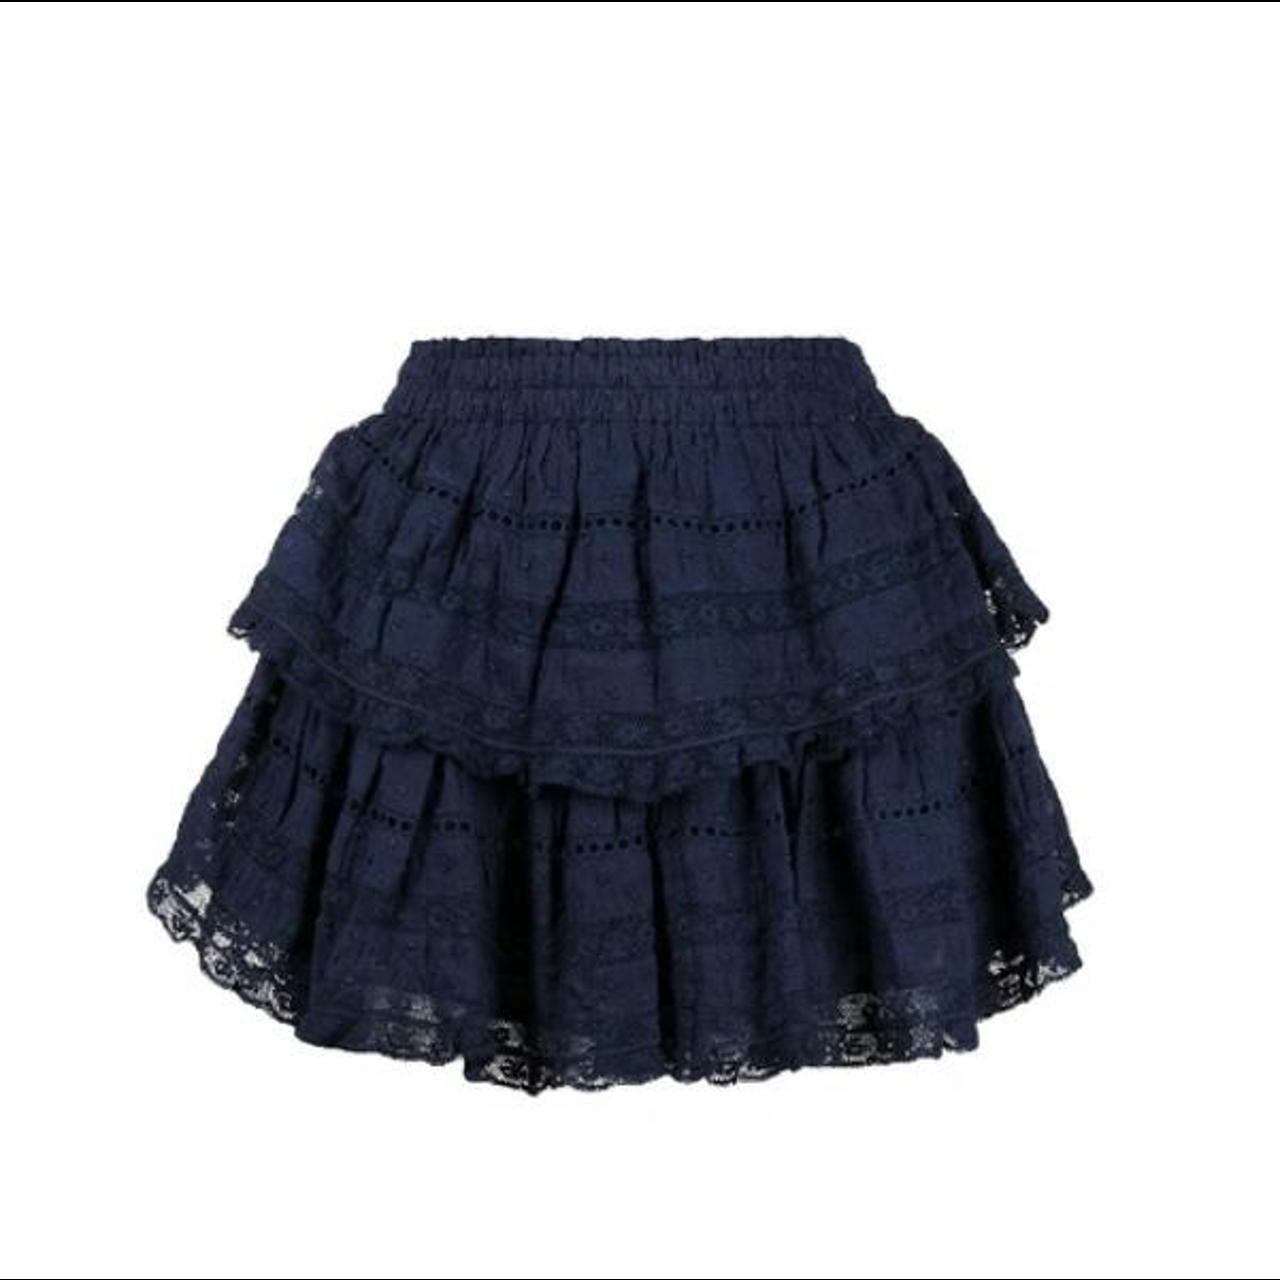 Loveshackfancy ruffle mini skirt in midnight size... - Depop